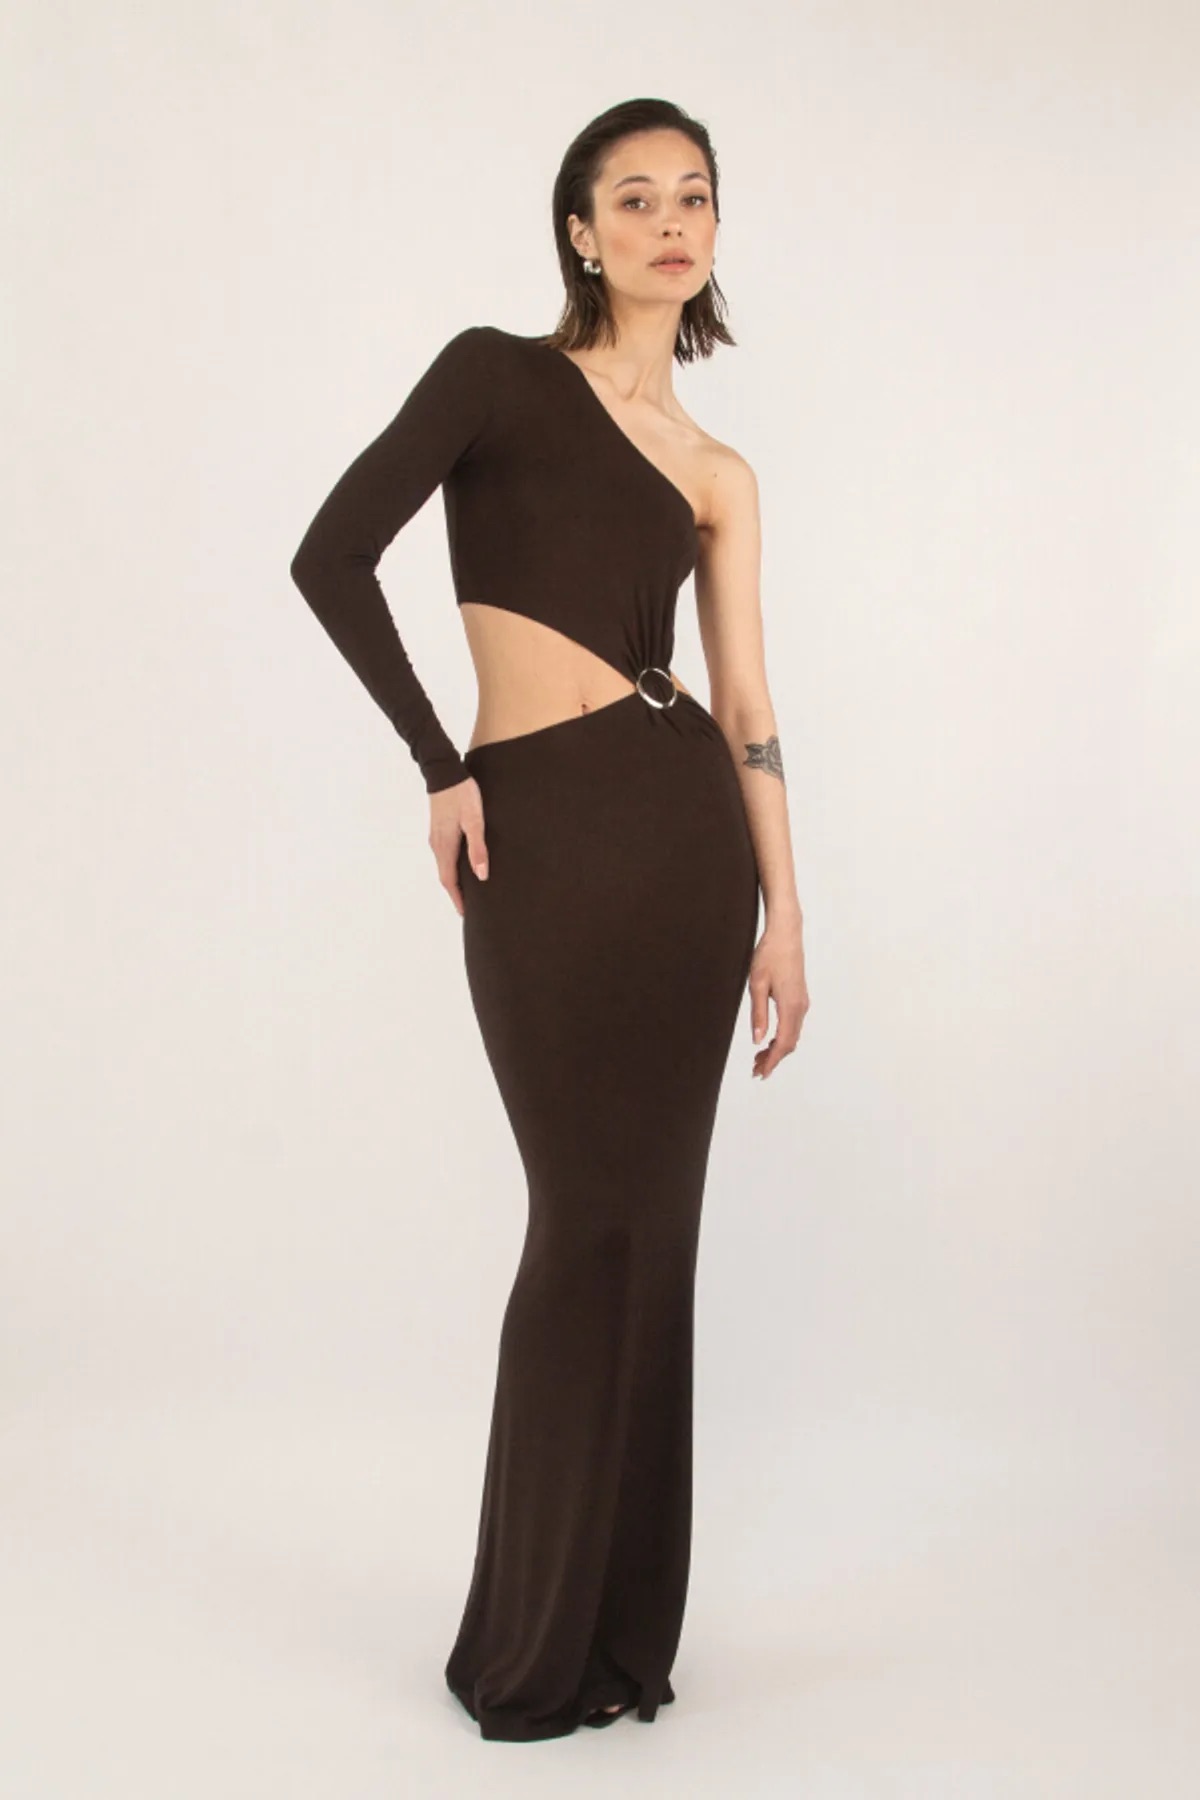 Девушка в асиметричном платье из нежной вискозной ткани премиум качества в длине макси с акцентными деталями от беларуского бренда Lsd.clothing.